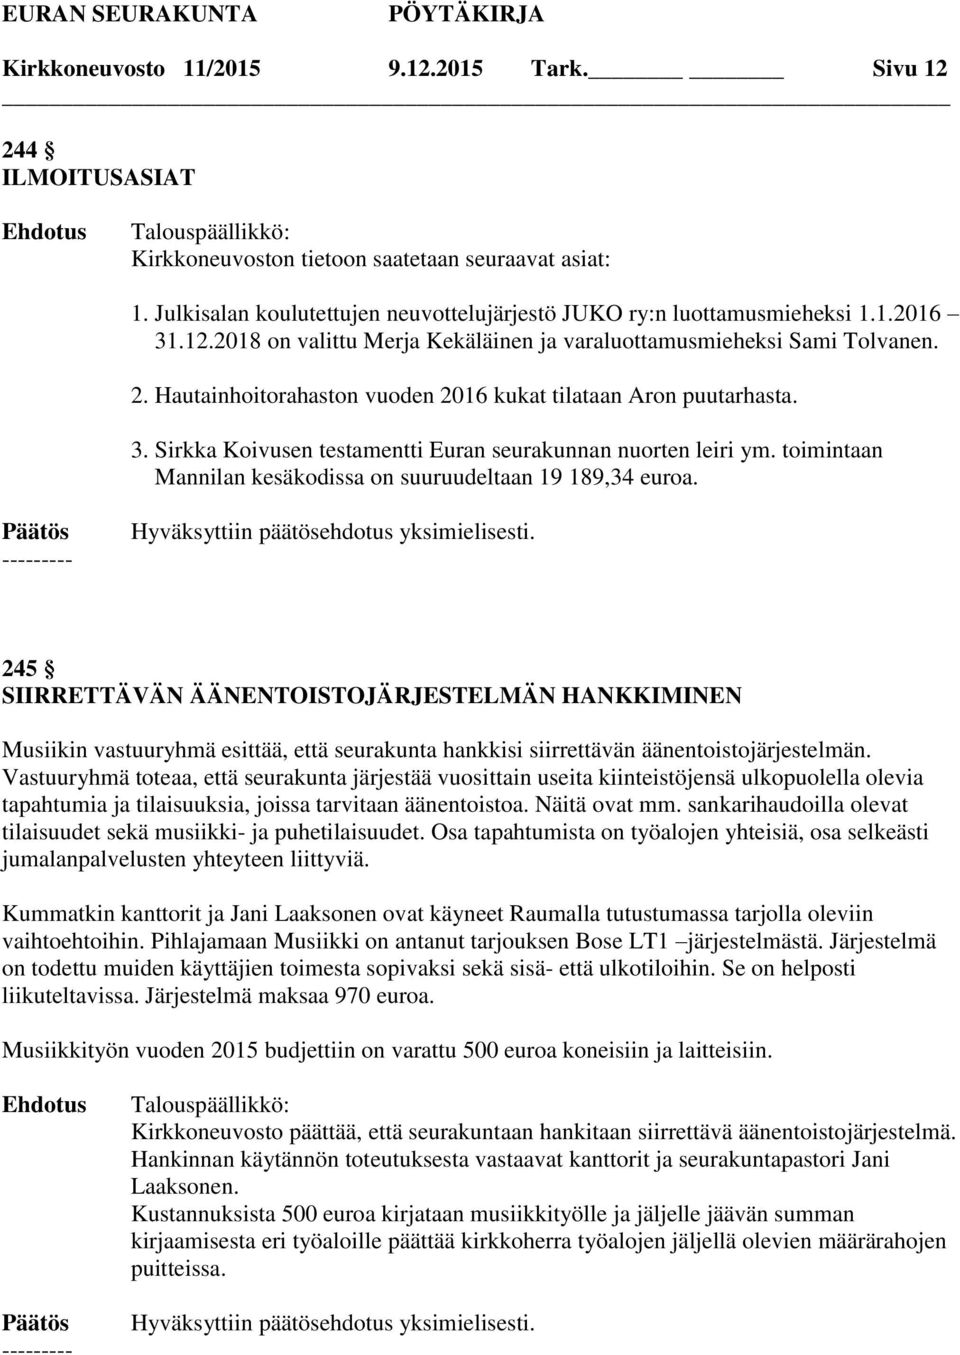 Sirkka Koivusen testamentti Euran seurakunnan nuorten leiri ym. toimintaan Mannilan kesäkodissa on suuruudeltaan 19 189,34 euroa.